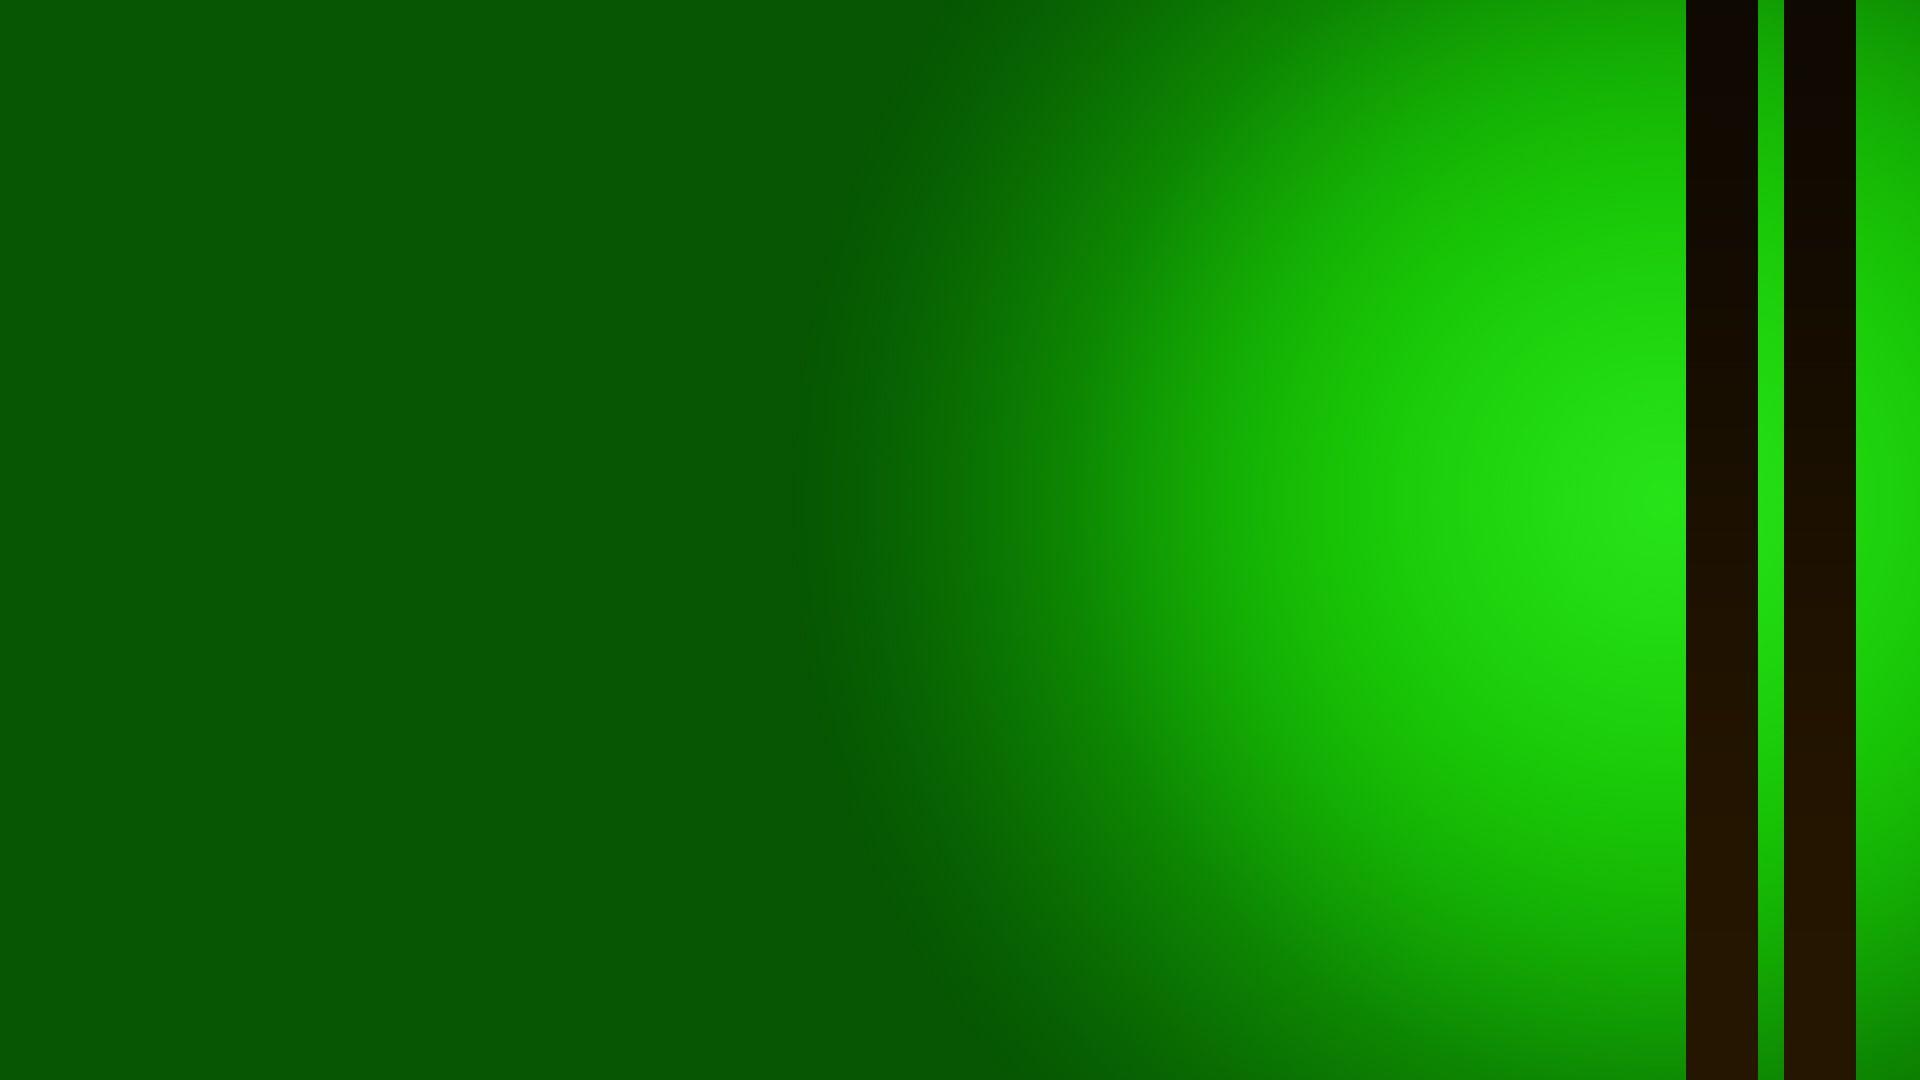 Green HD Wallpaper Group 1920×1080 Green Wallpaper HD 61